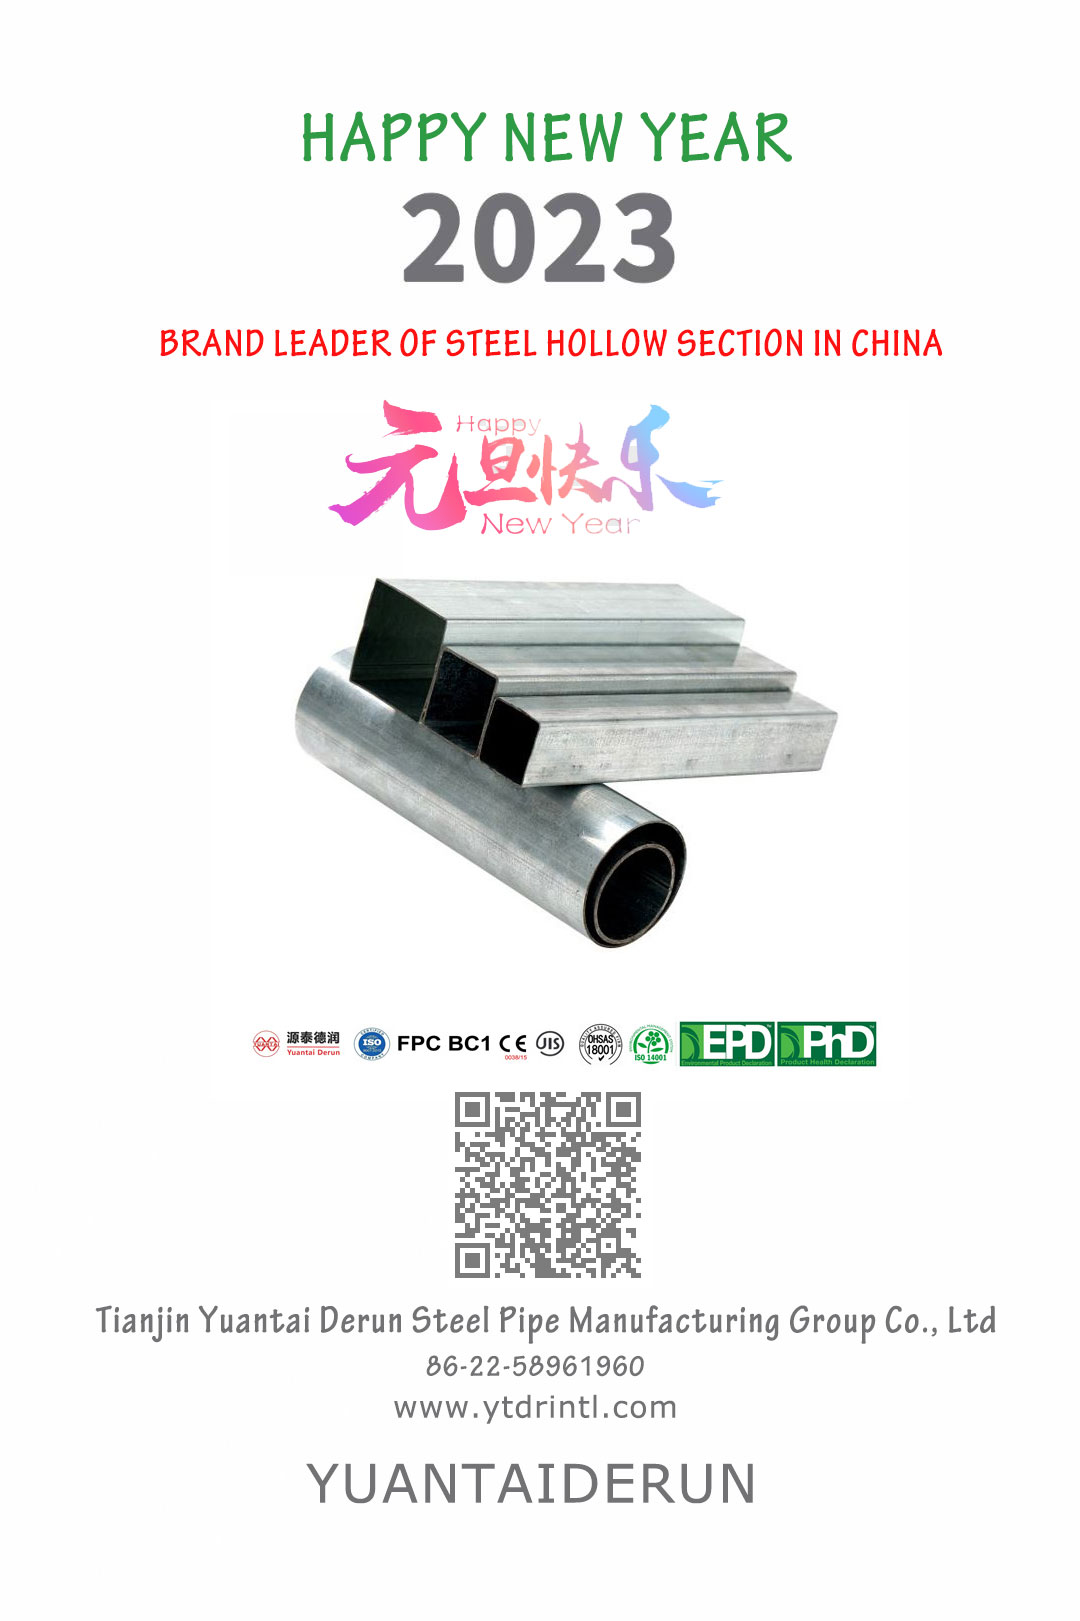 Feliç any nou: líder de la marca de secció buida d'acer de la Xina